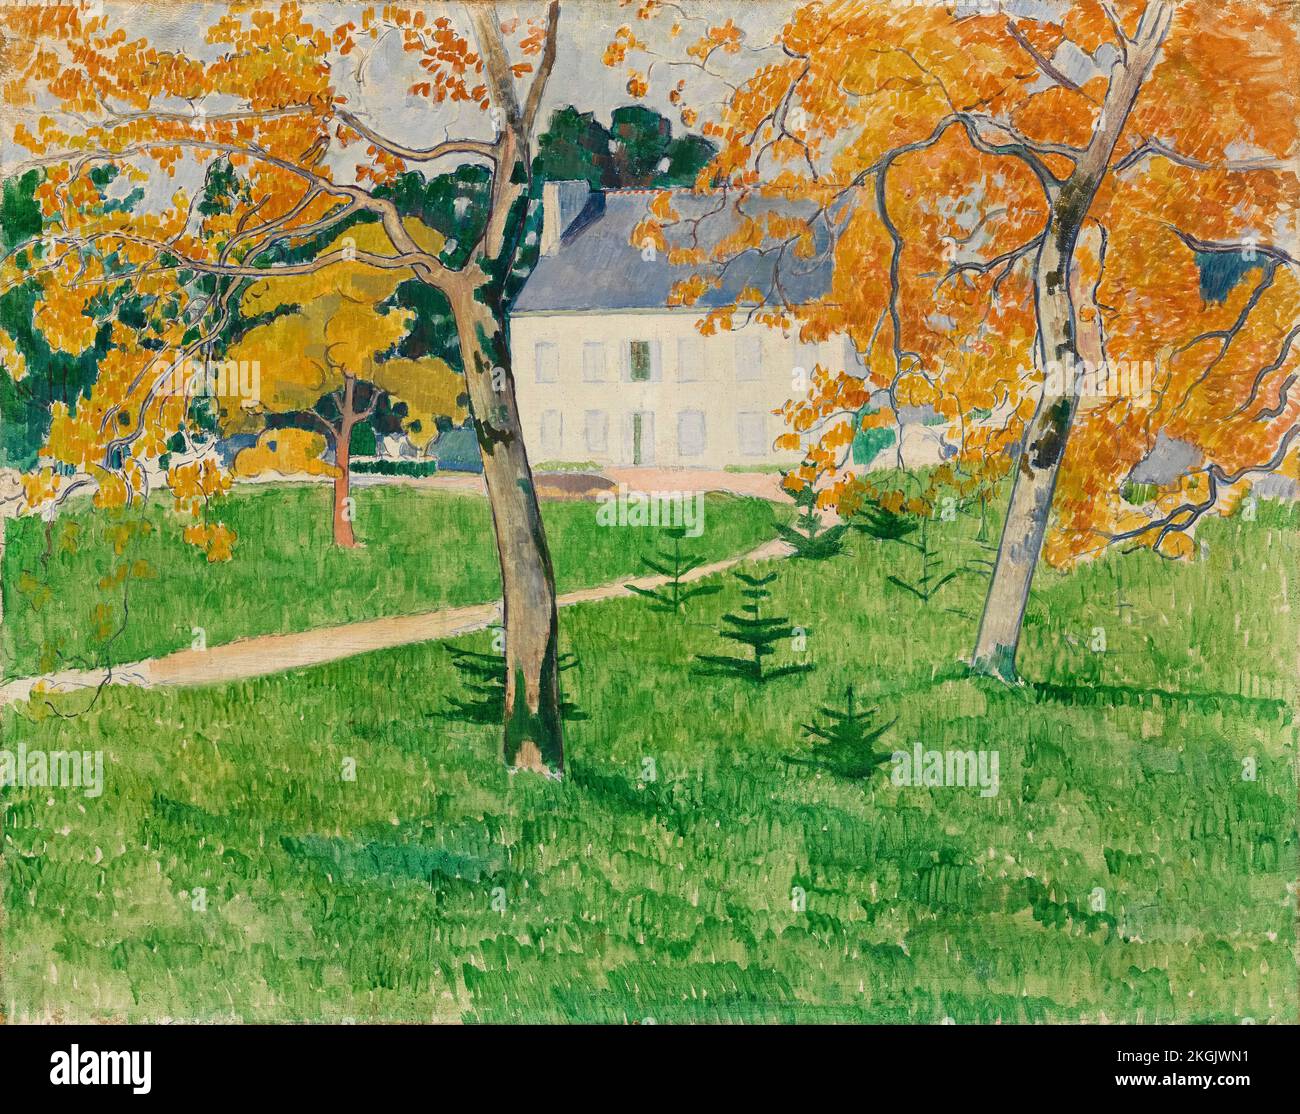 Emile Bernard, Maison parmi les arbres : Pont-Aven, peinture à l'huile sur toile, 1888 Banque D'Images